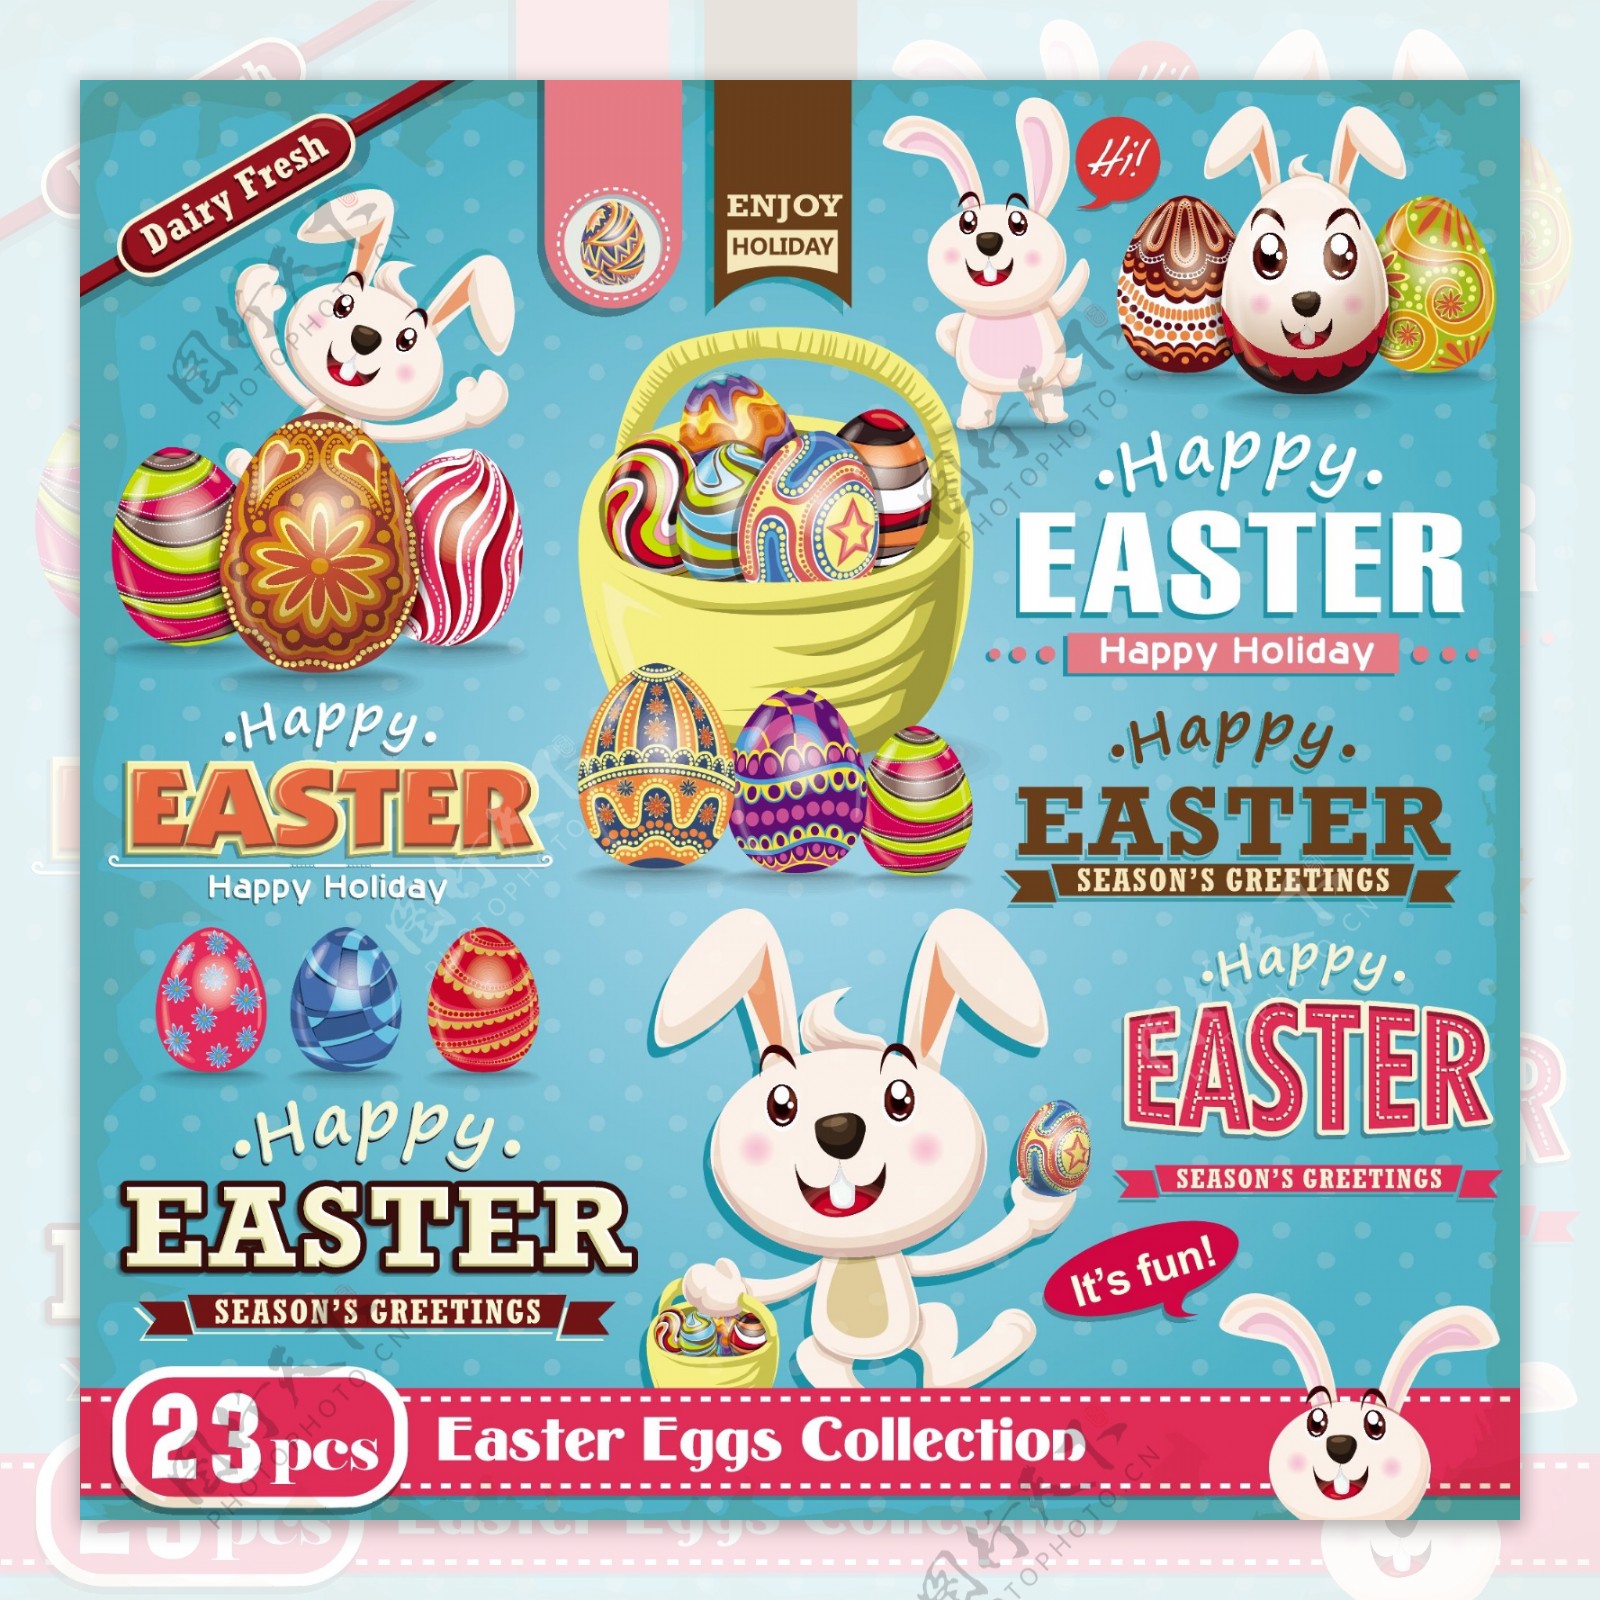 兔子和彩蛋元素复活节海报矢量